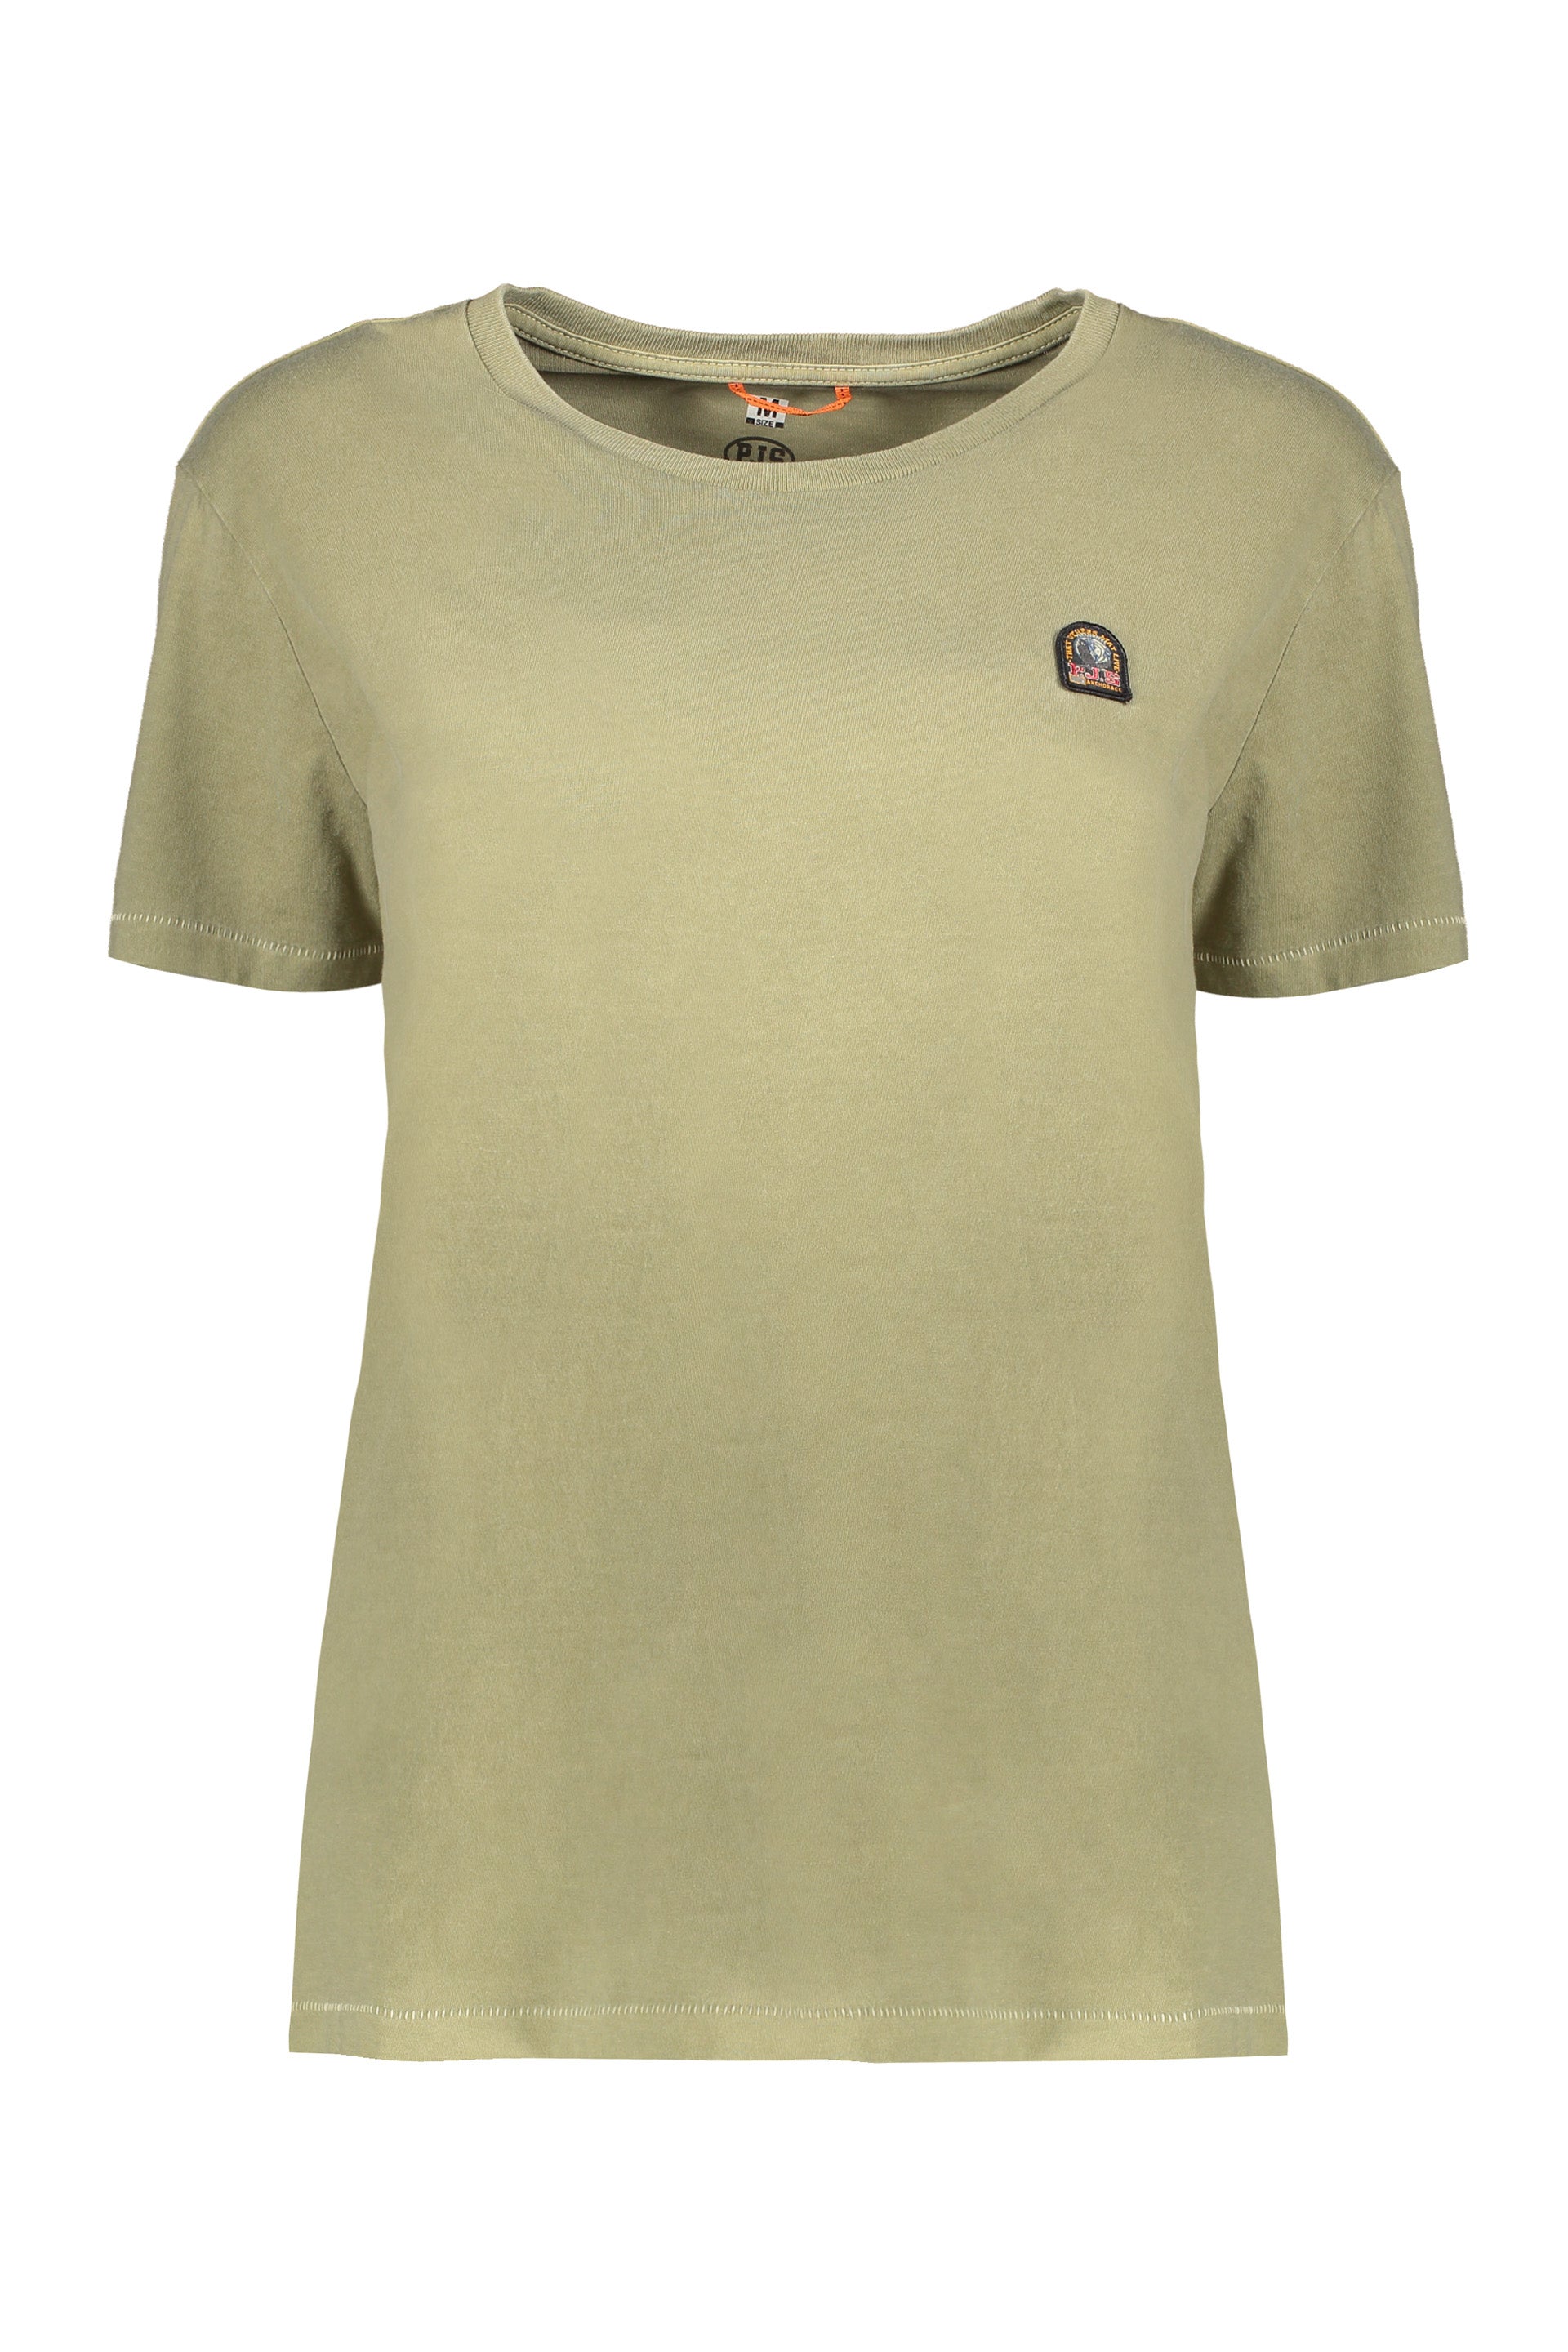 Parajumpers-OUTLET-SALE-Cotton-T-shirt-Shirts-L-ARCHIVE-COLLECTION_7f0db02e-4d08-4a56-99e8-d47b4214b91e.jpg